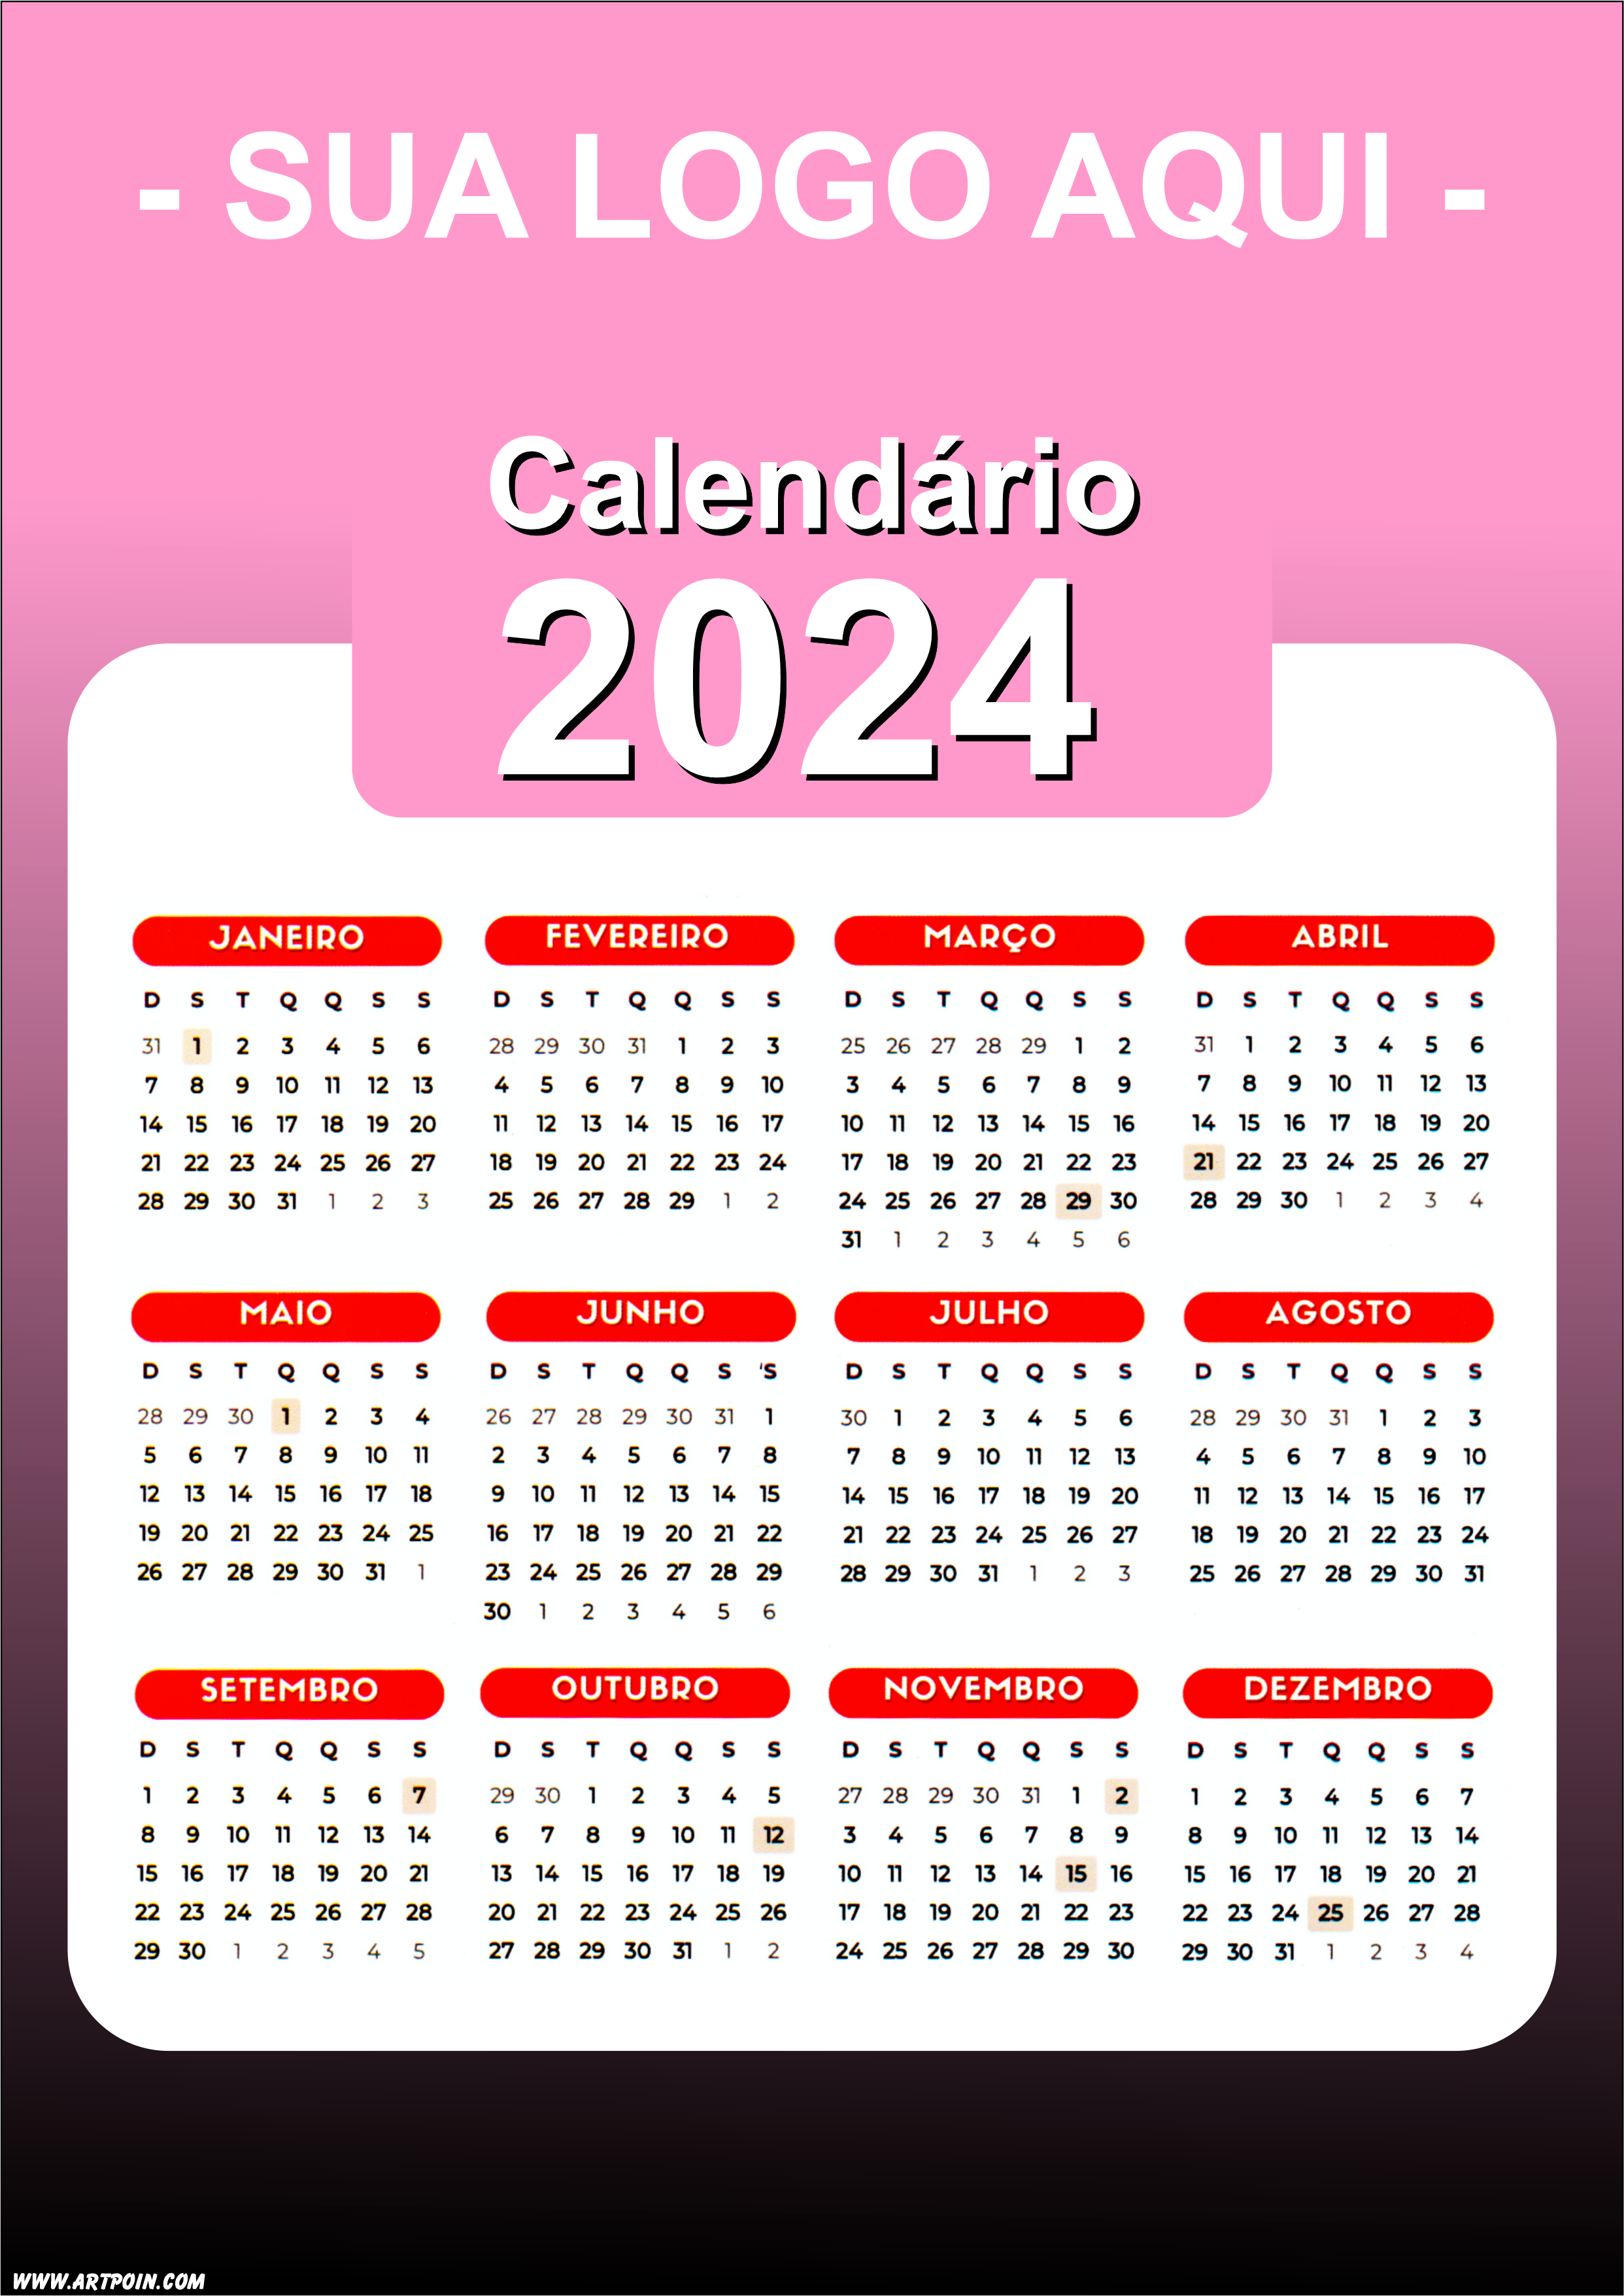 Calendário 2024 modelo rosa para personalização com a logo da sua loja png